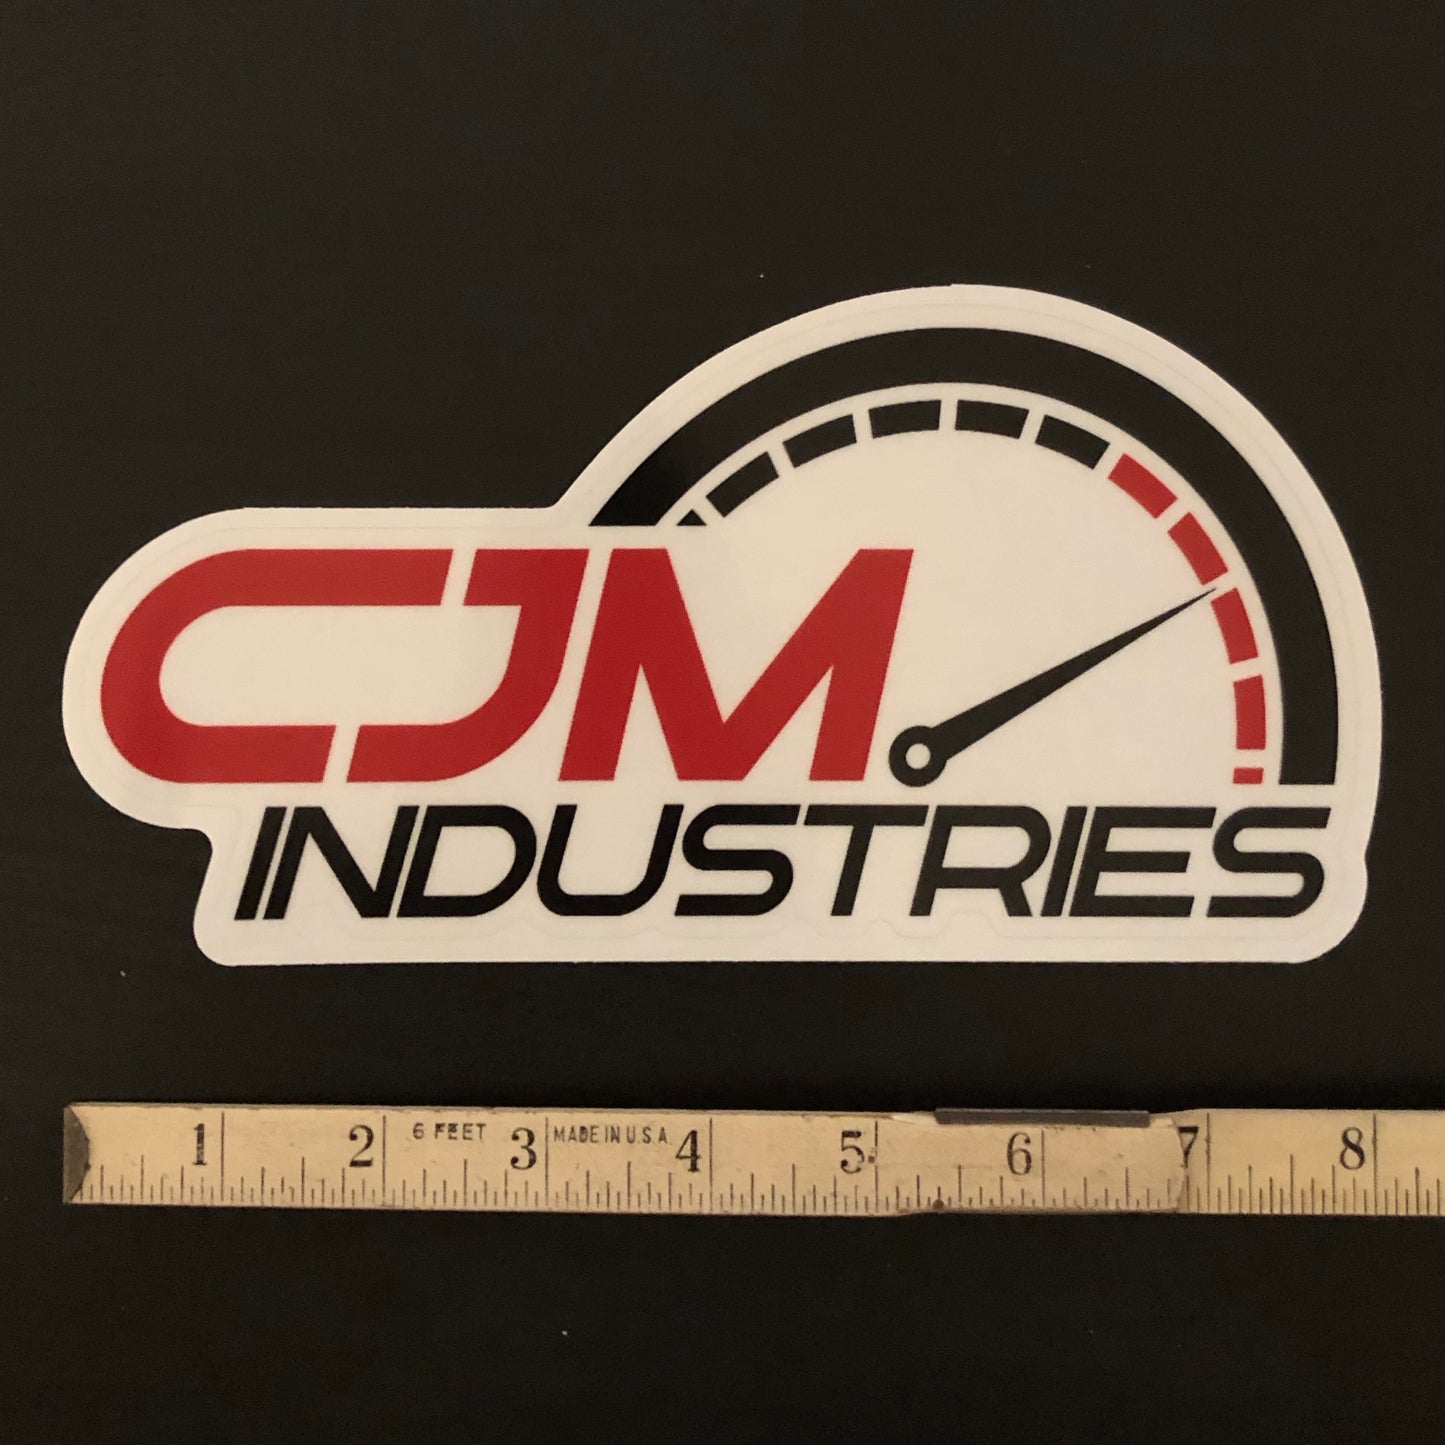 CJM Industries Clear Sticker (8"x4")